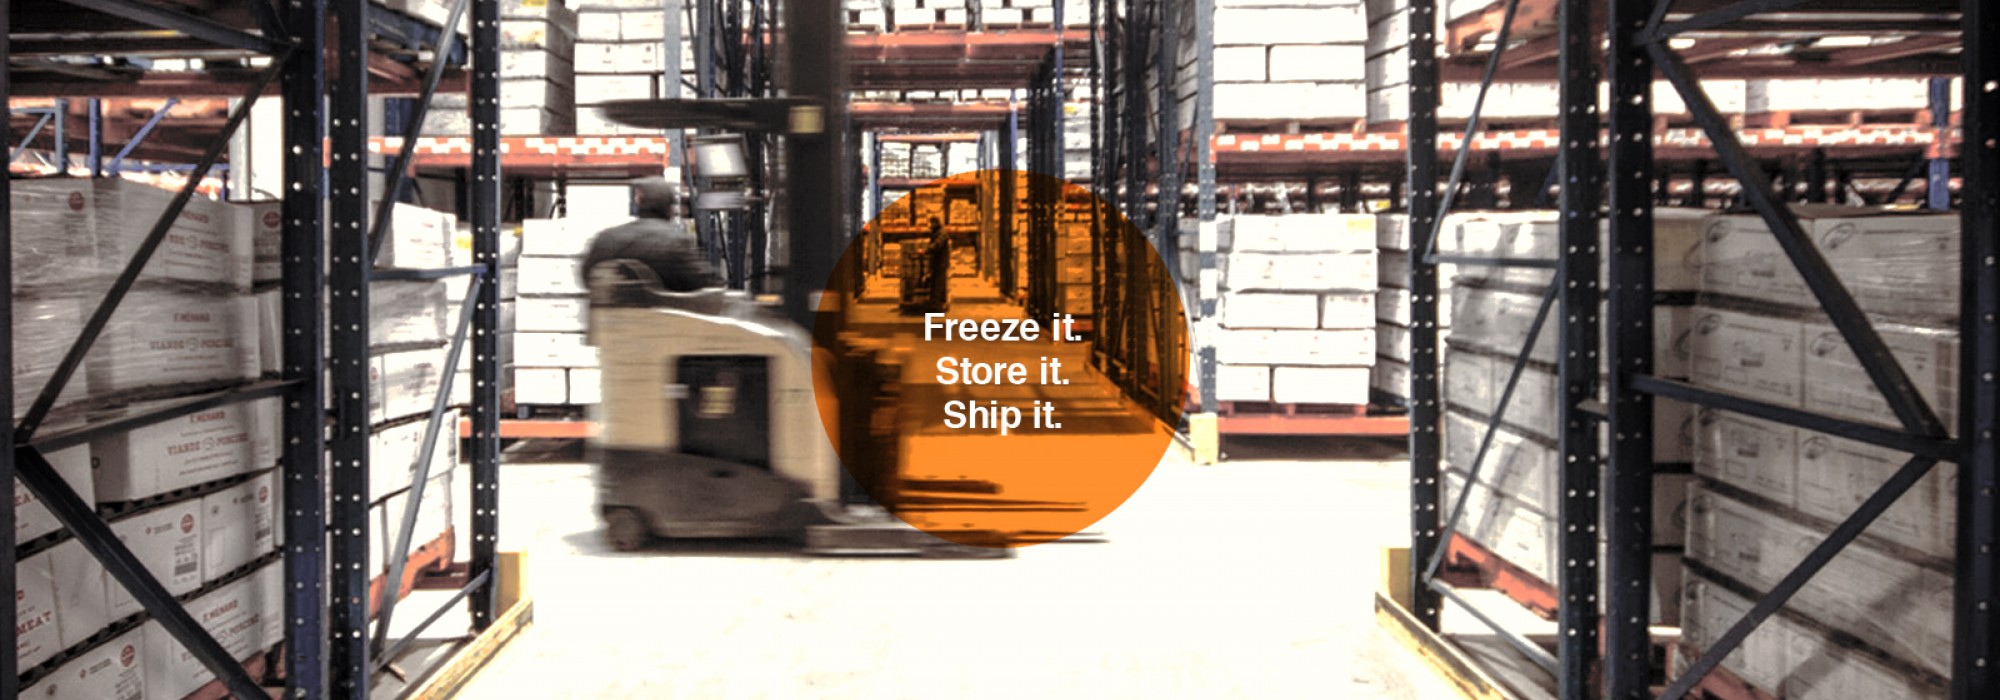 Freeze it. Store it. Ship it.